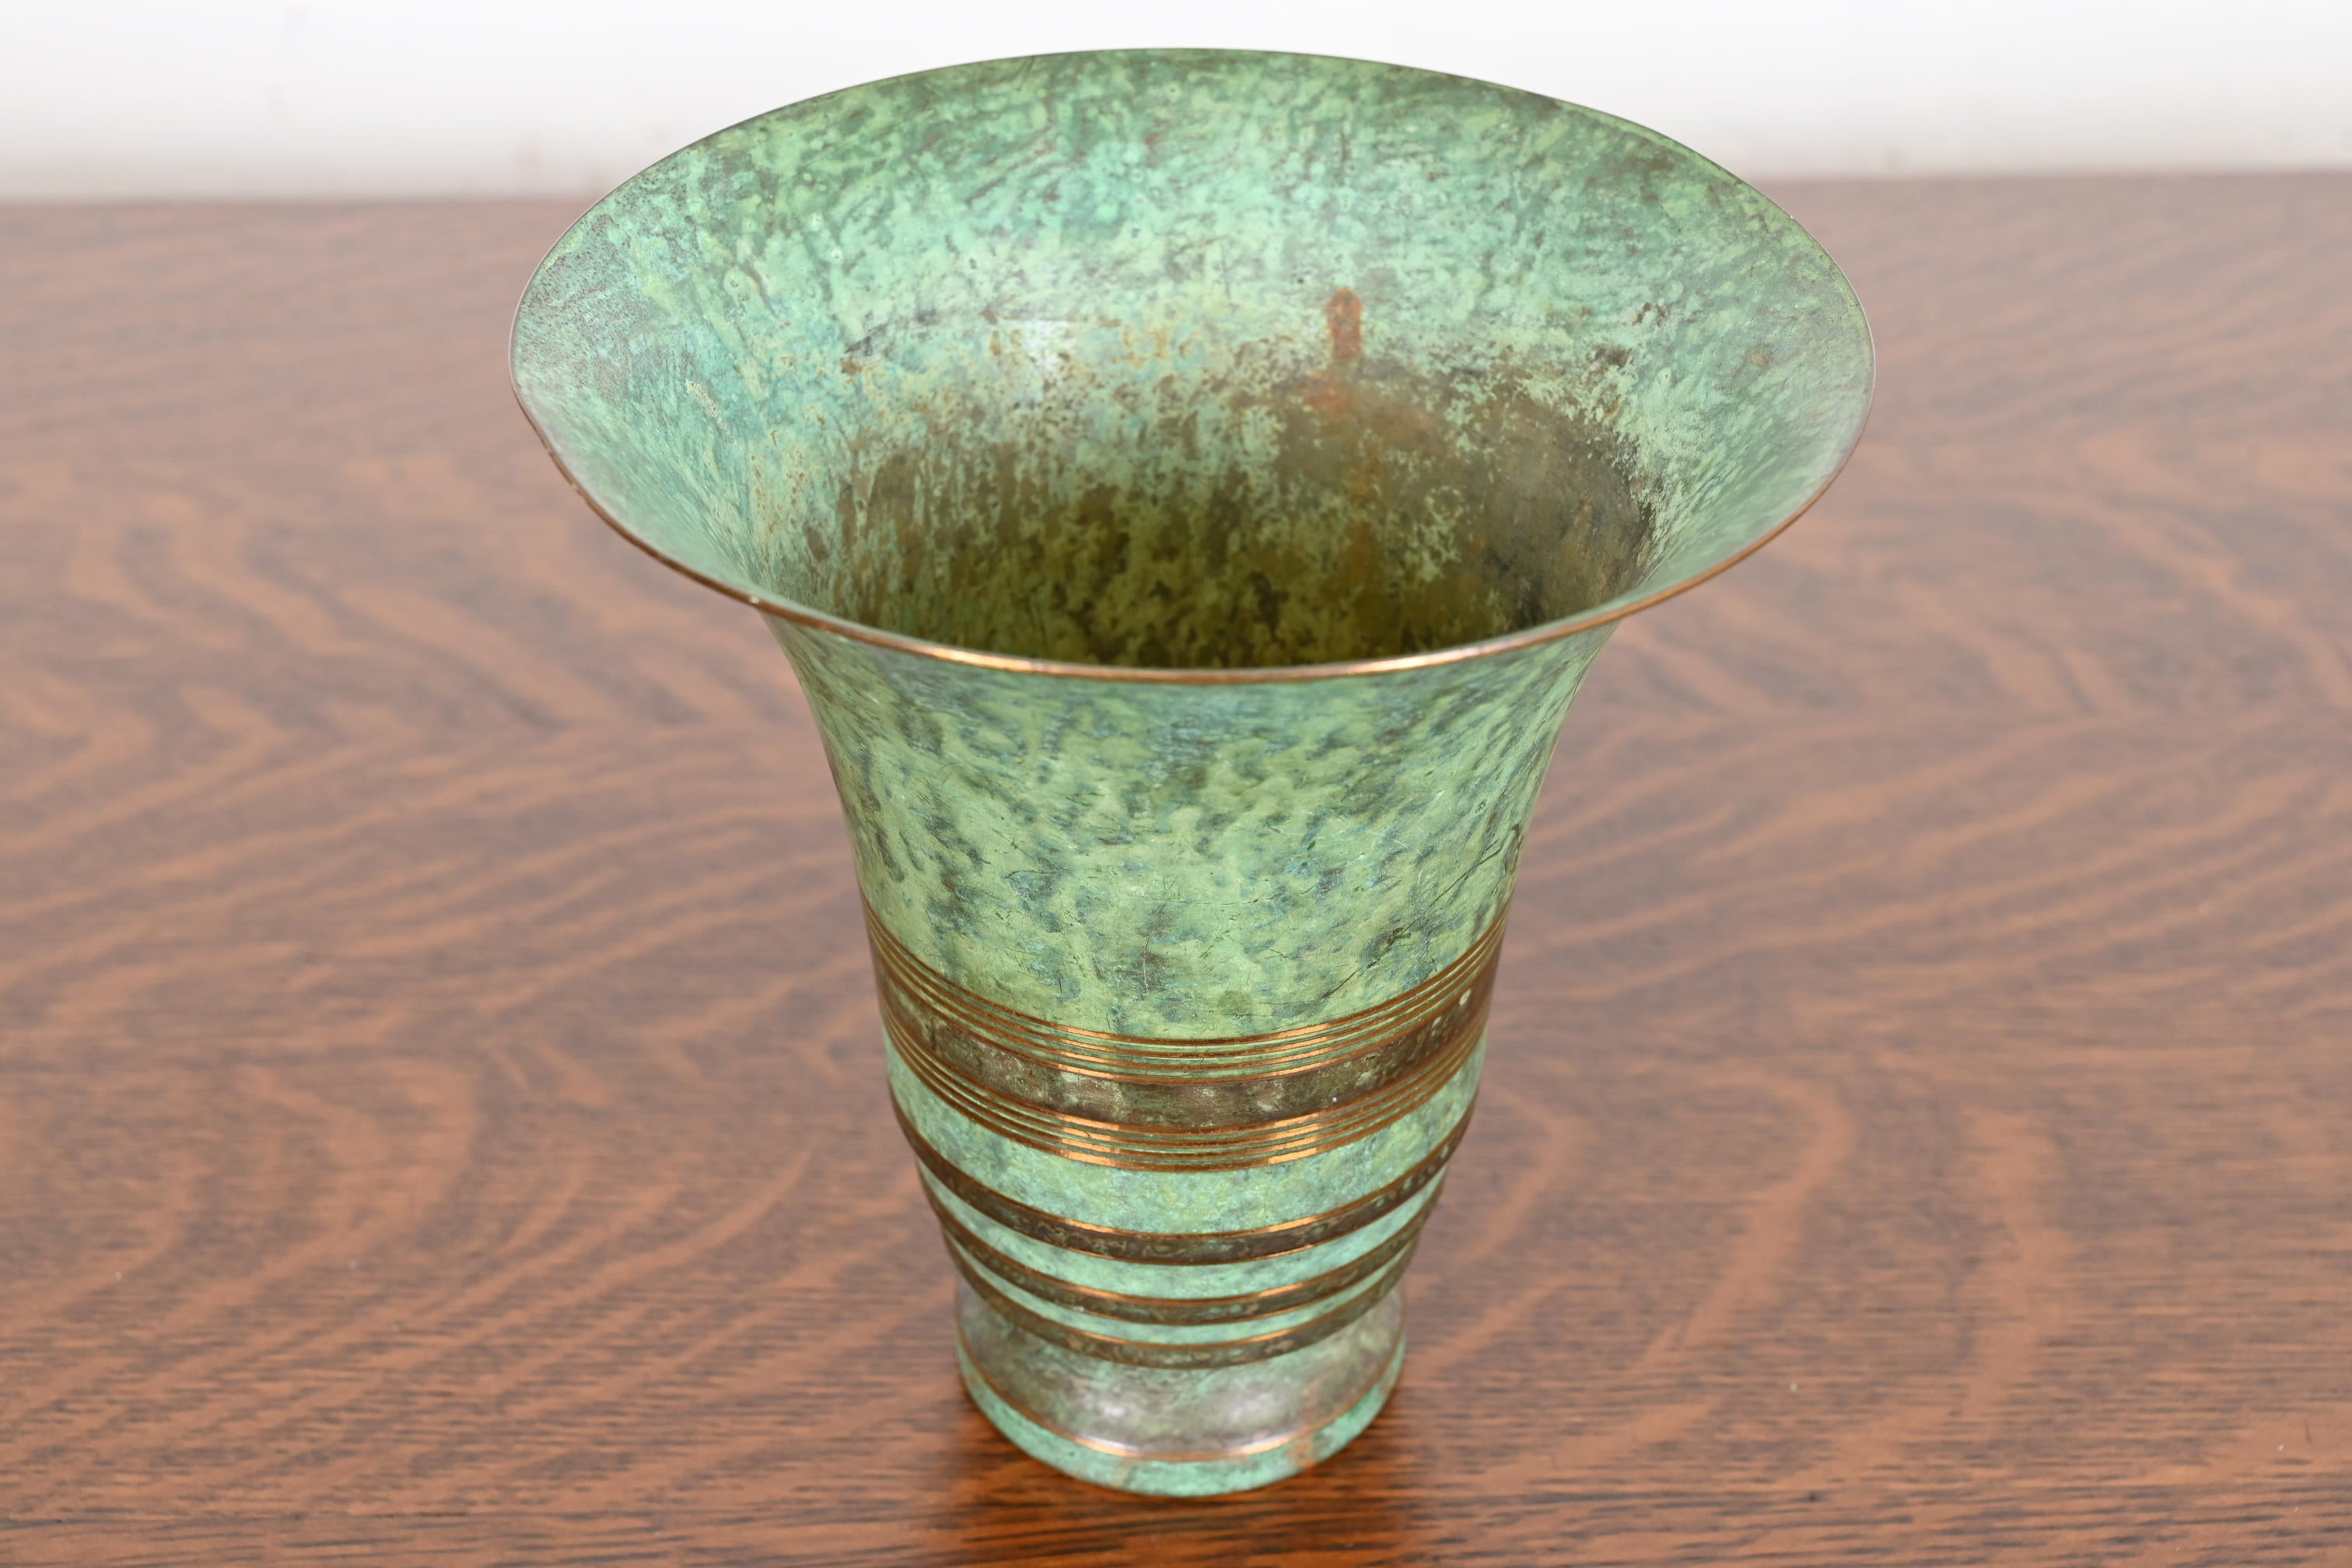 Magnifique vase Art déco ou Arts & Crafts en bronze vert-de-gris avec grenouille fleurie.

Par Carl Sorensen

États-Unis d'Amérique, début du 20e siècle

Dimensions : 6,38 